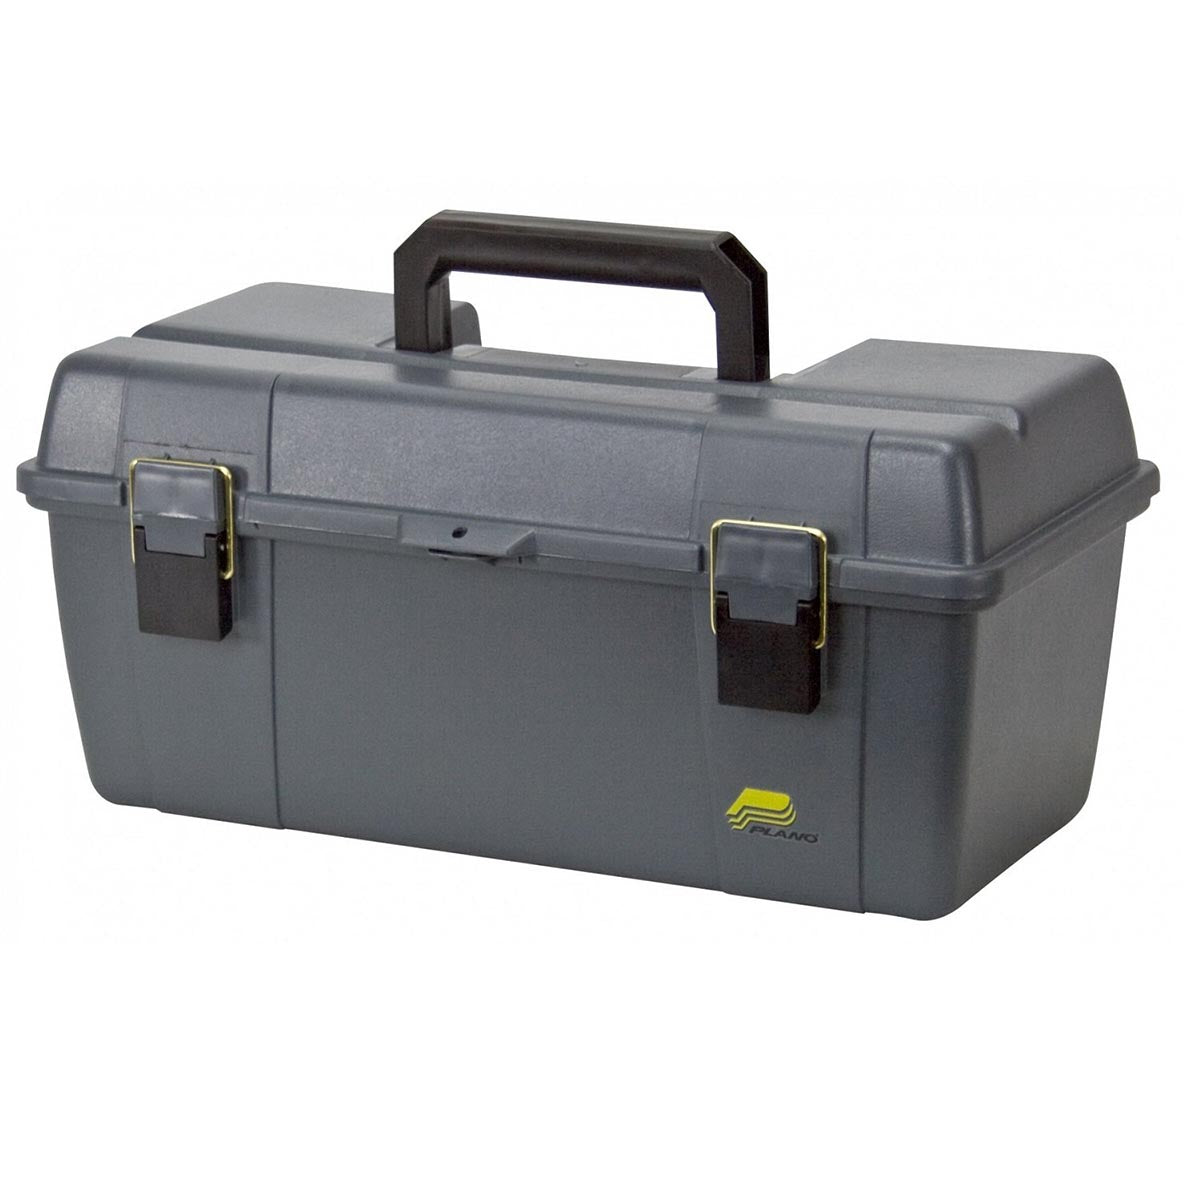 Plano 20" Portable Tool Box With Tray (gray)